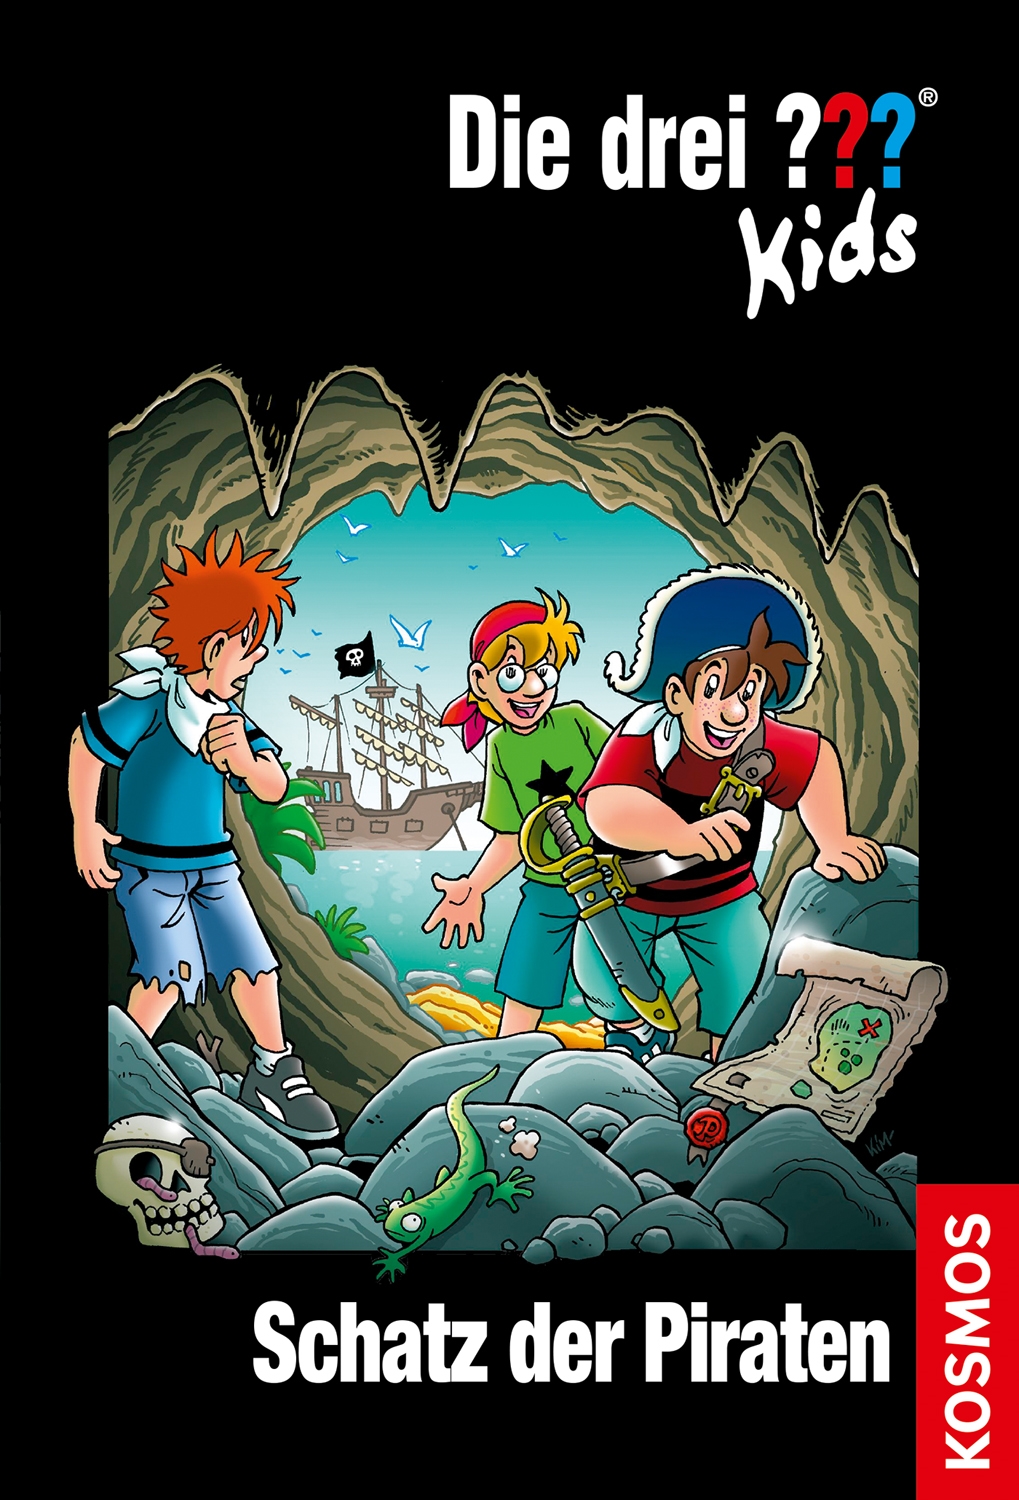 Die Drei ??? (Fragezeichen) Kids, Buch-Band 50: Die drei ??? Kids, 50, Schatz der Piraten